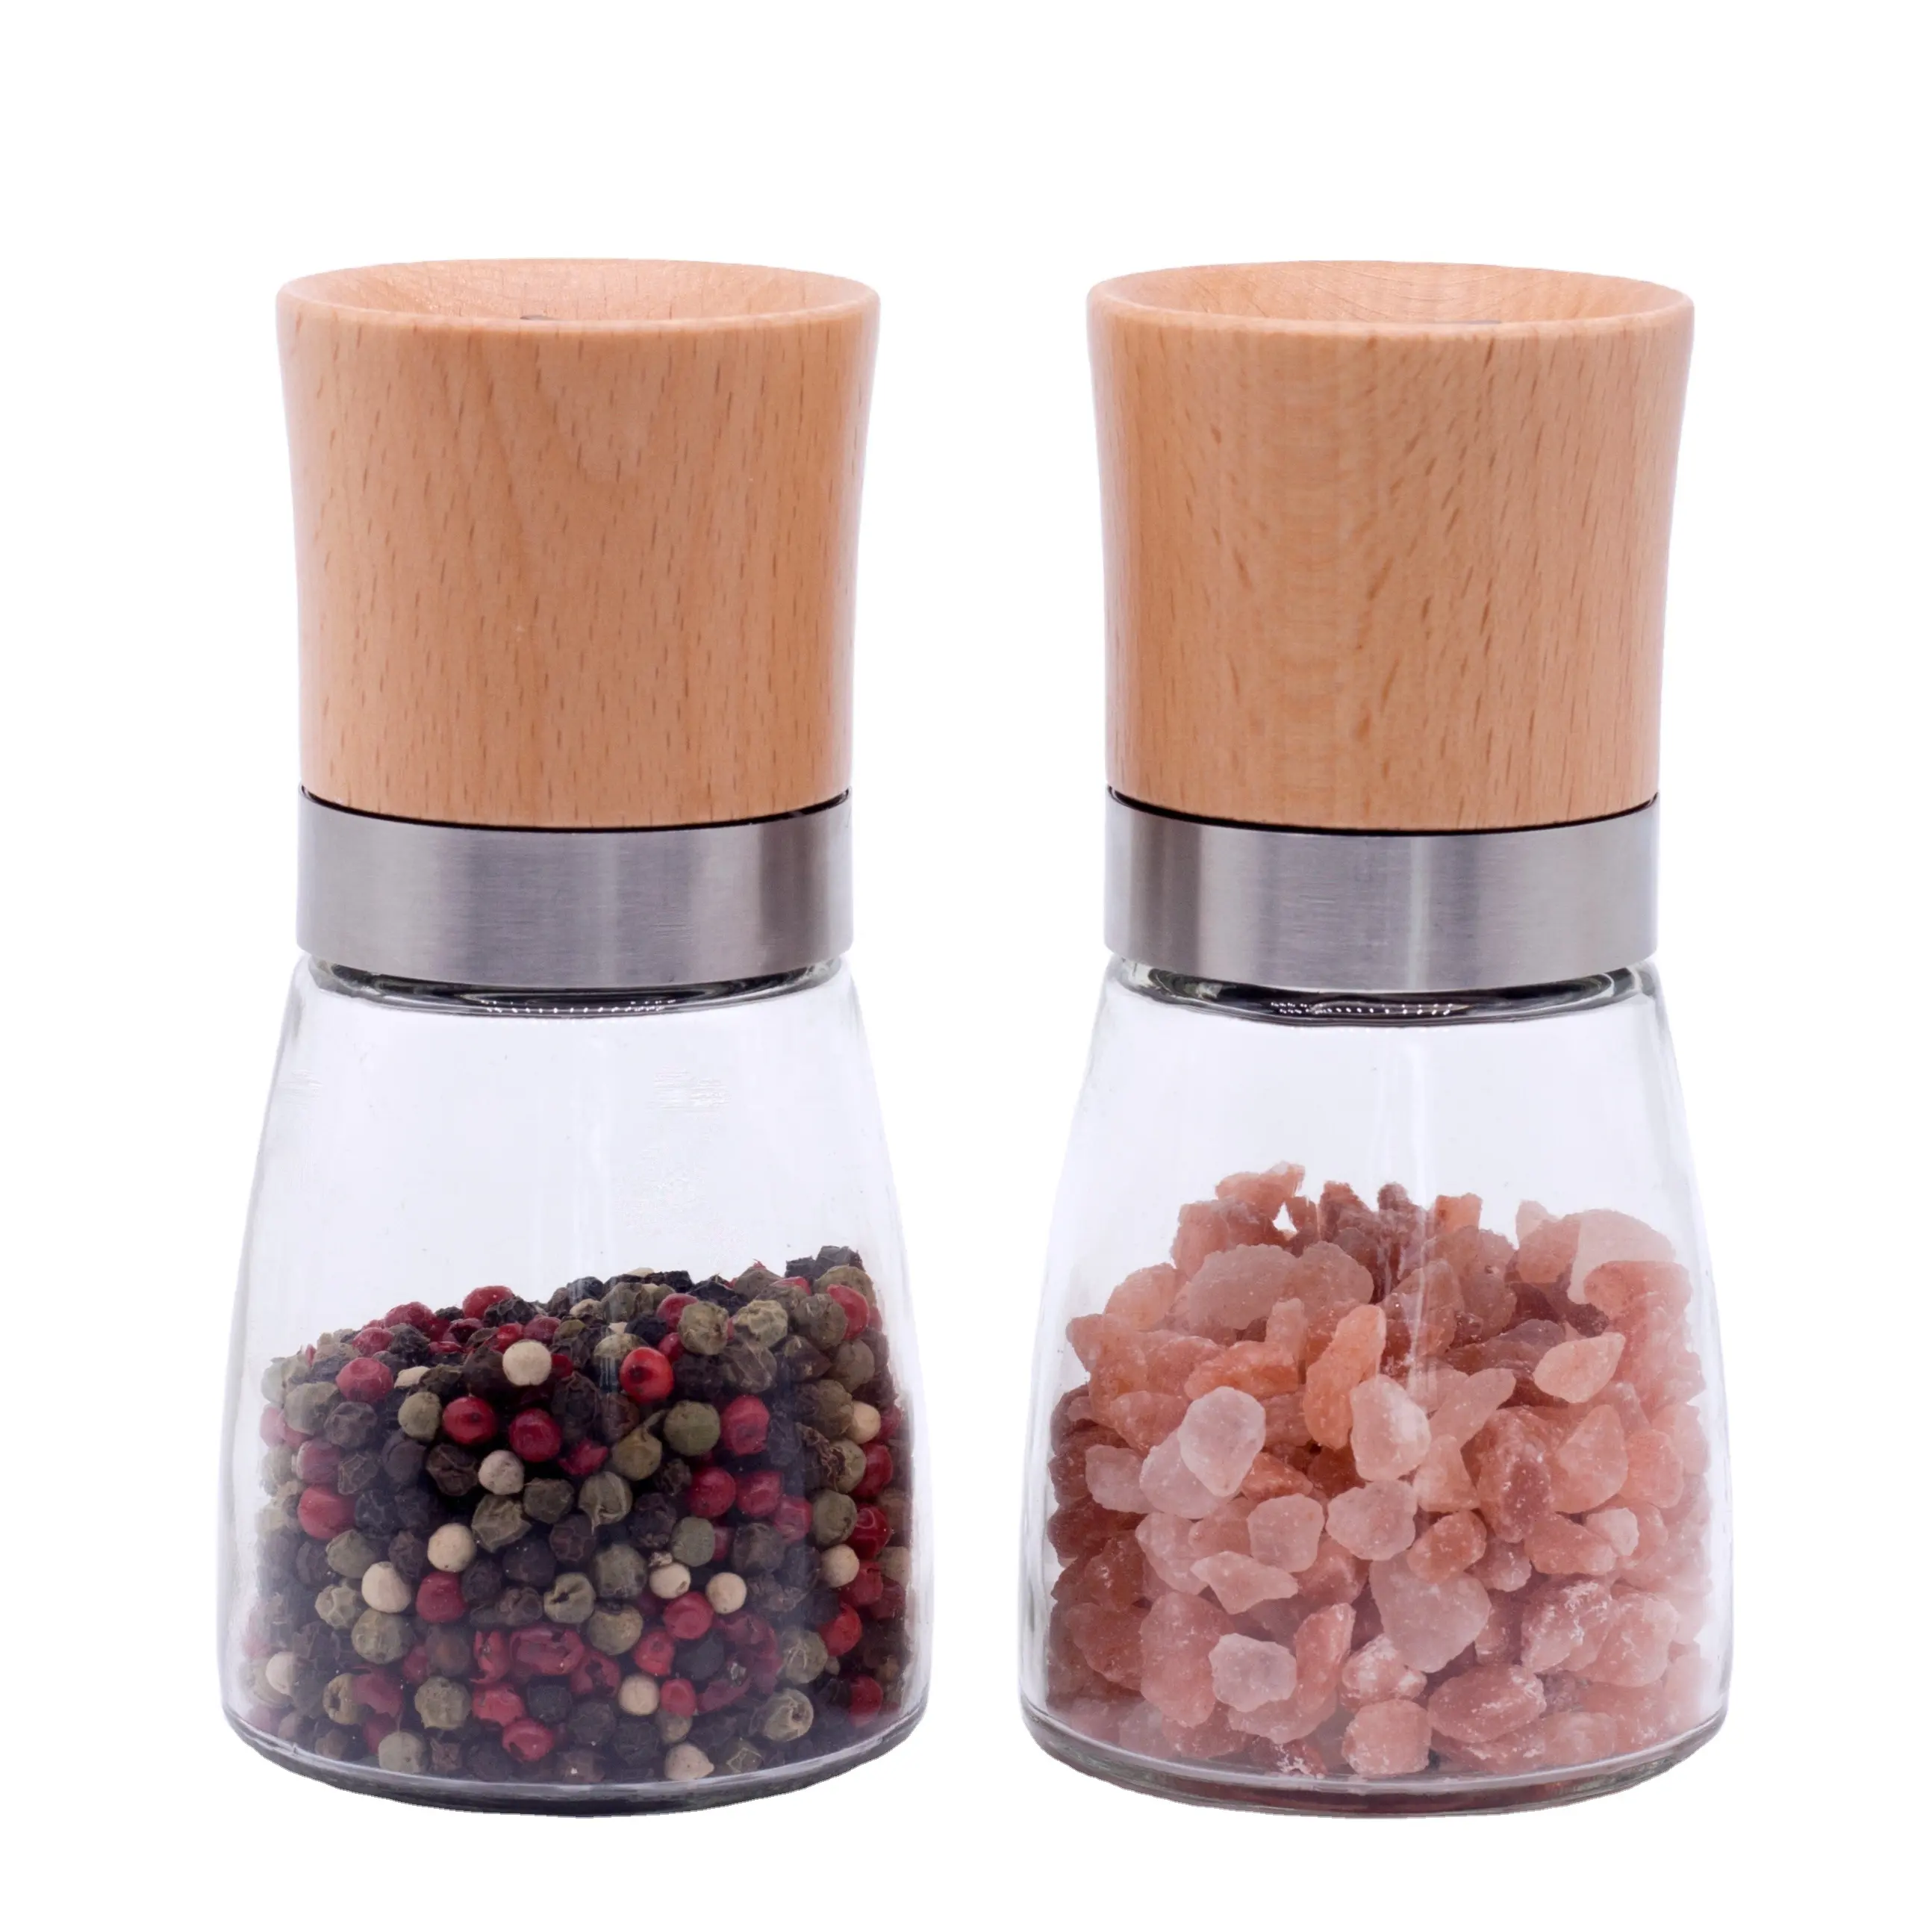 manual wood salt pepper grinder mills himalayan salt grinder adjustable refill ceramic salt and pepper grinder